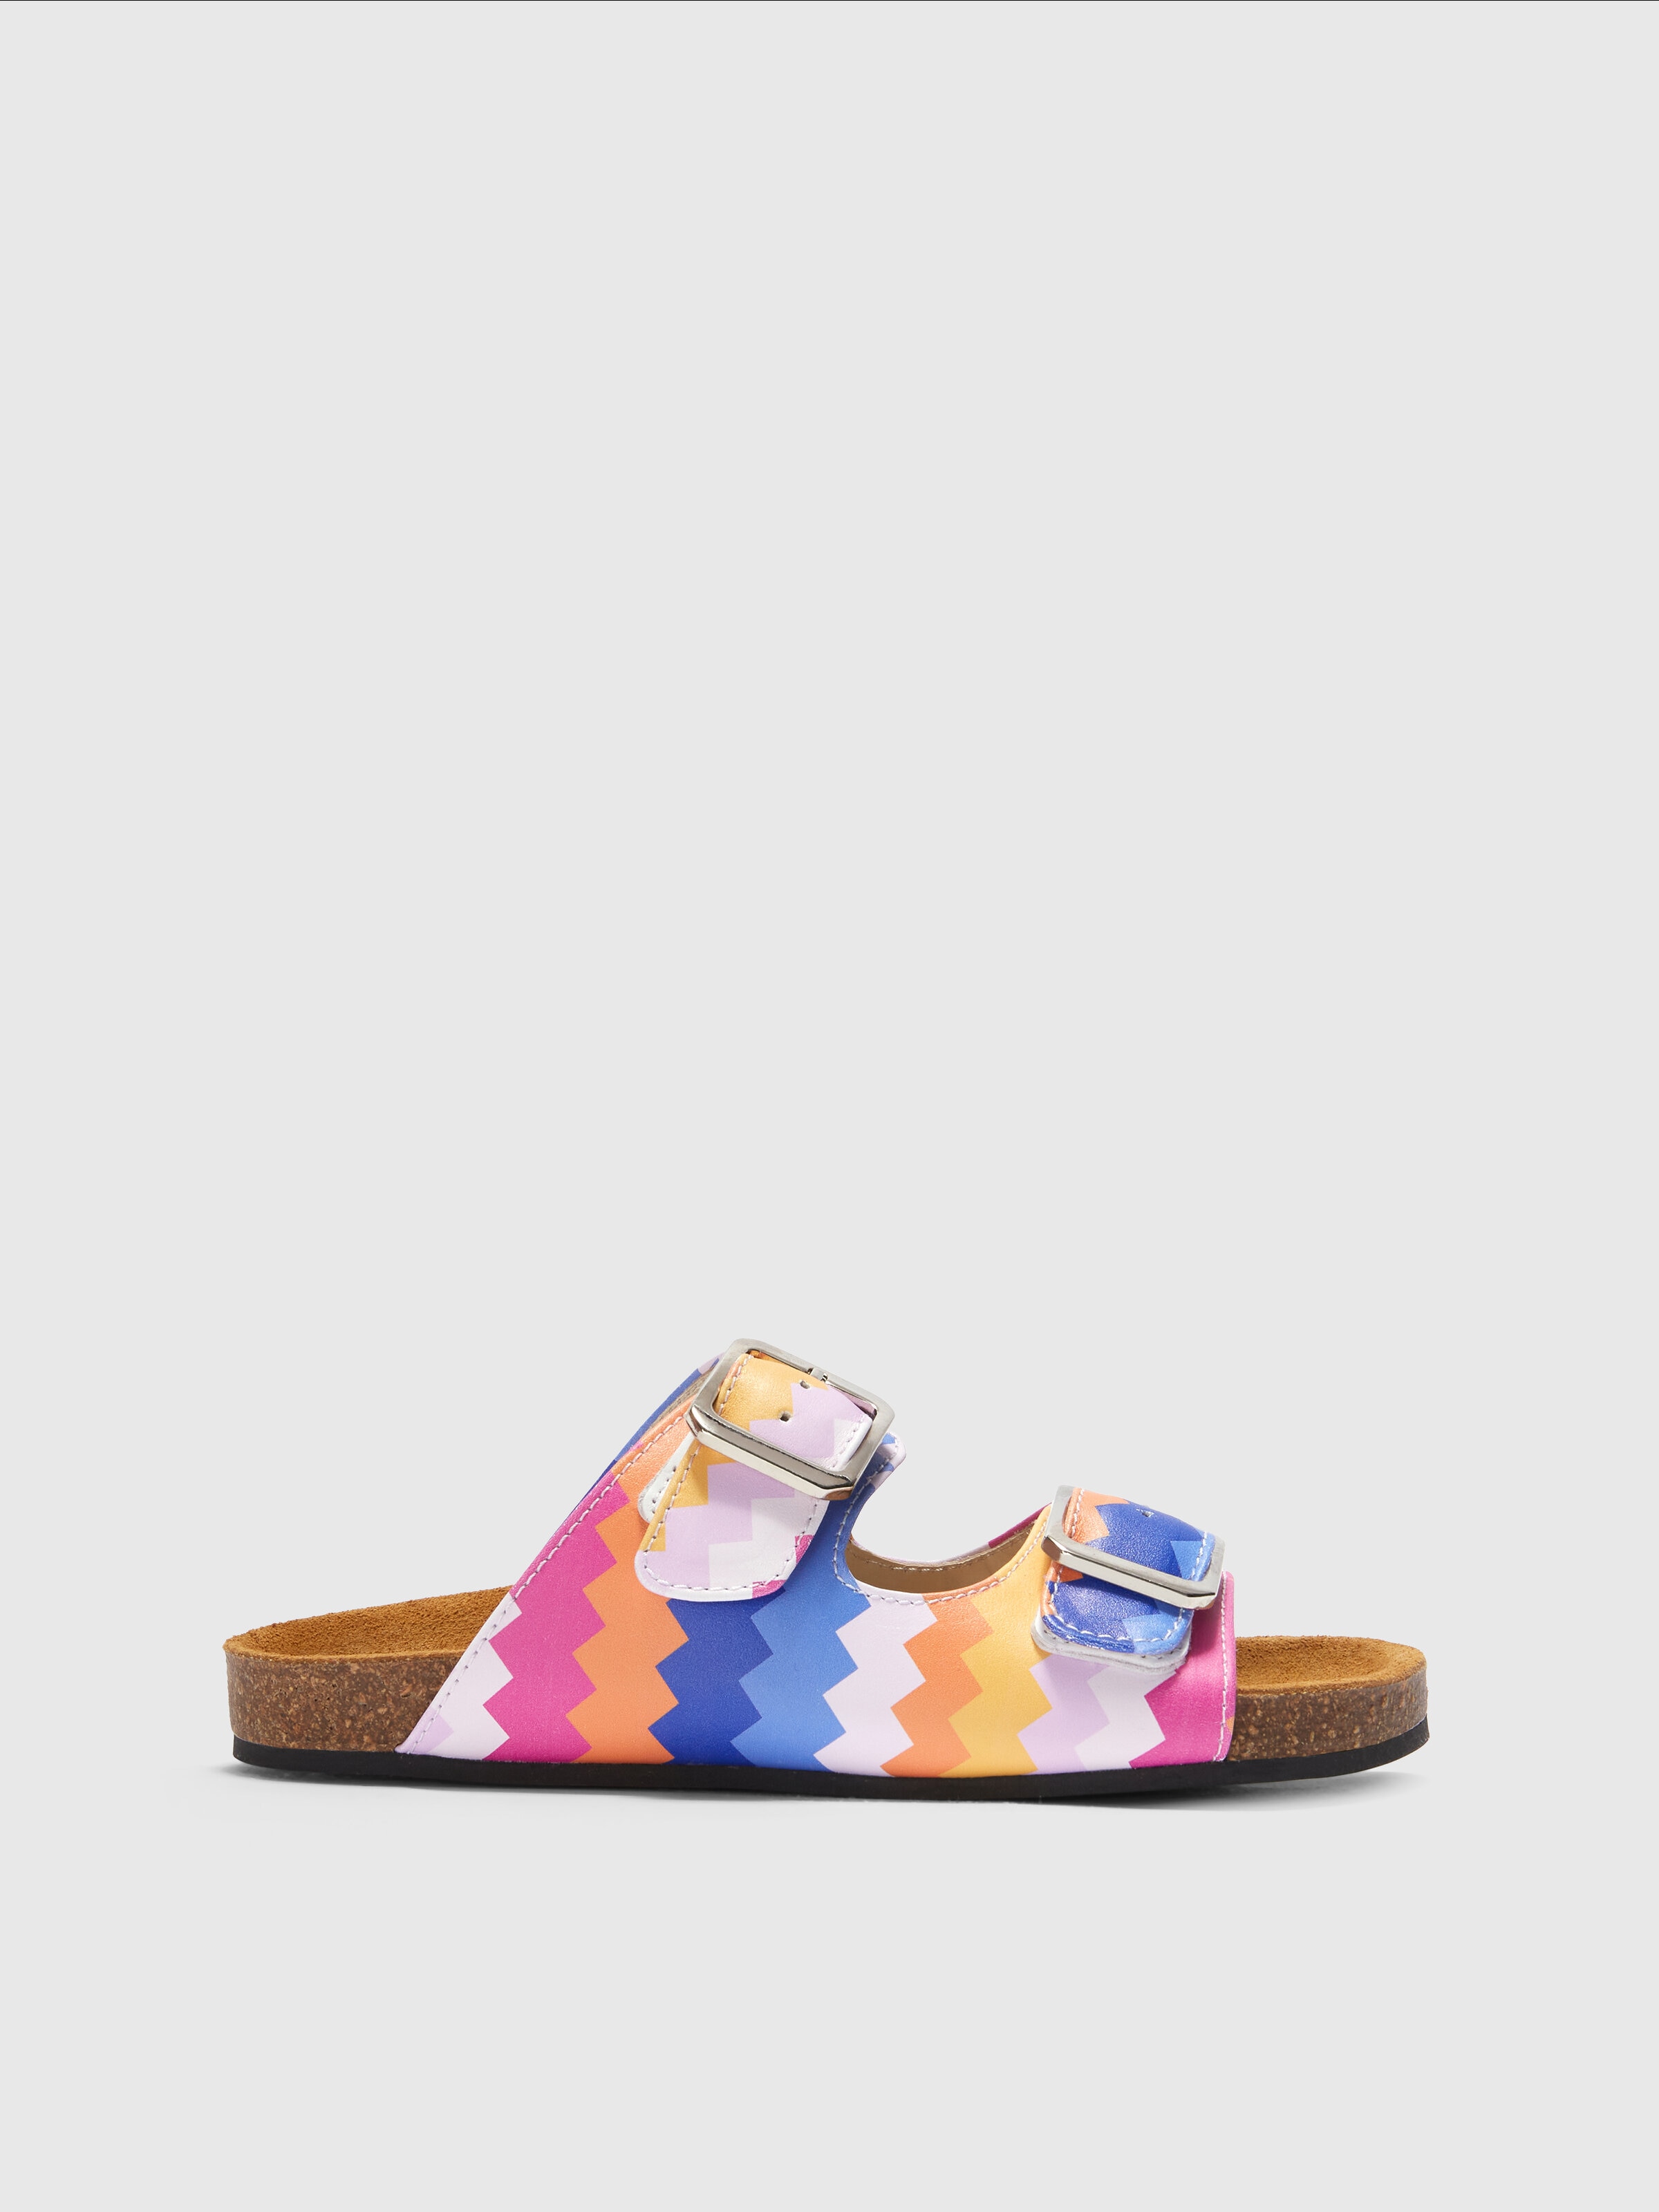 Sandalias con doble tira y motivo de espigas, Multicolor  - 0